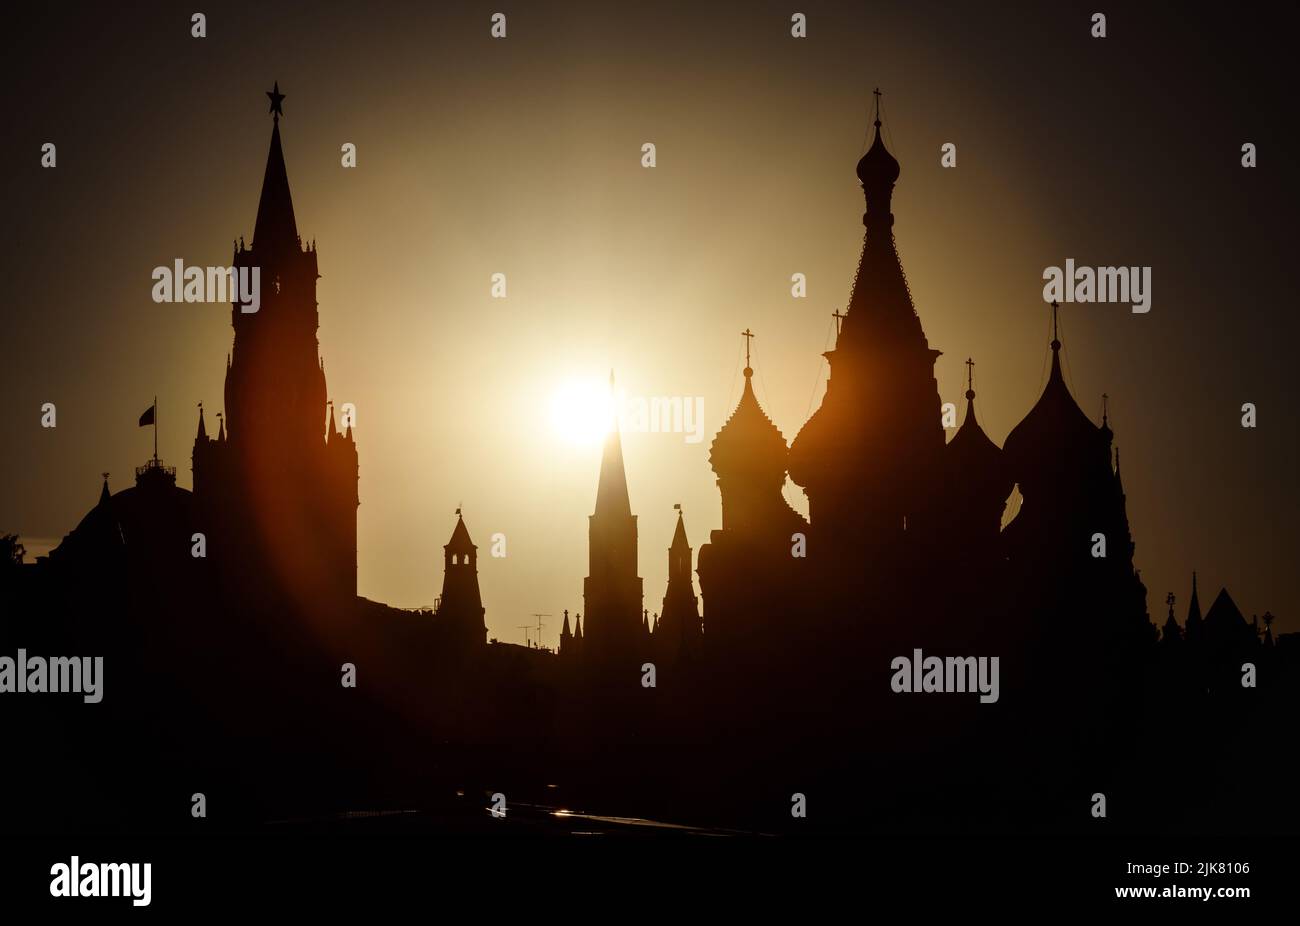 Moskauer Kreml und Basilius-Kathedrale bei Sonnenuntergang, Russland. Szenerie des Stadtzentrums von Moskau und Sonne am Sommerabend. Silhouetten von Moskauer Wahrzeichen in Stockfoto